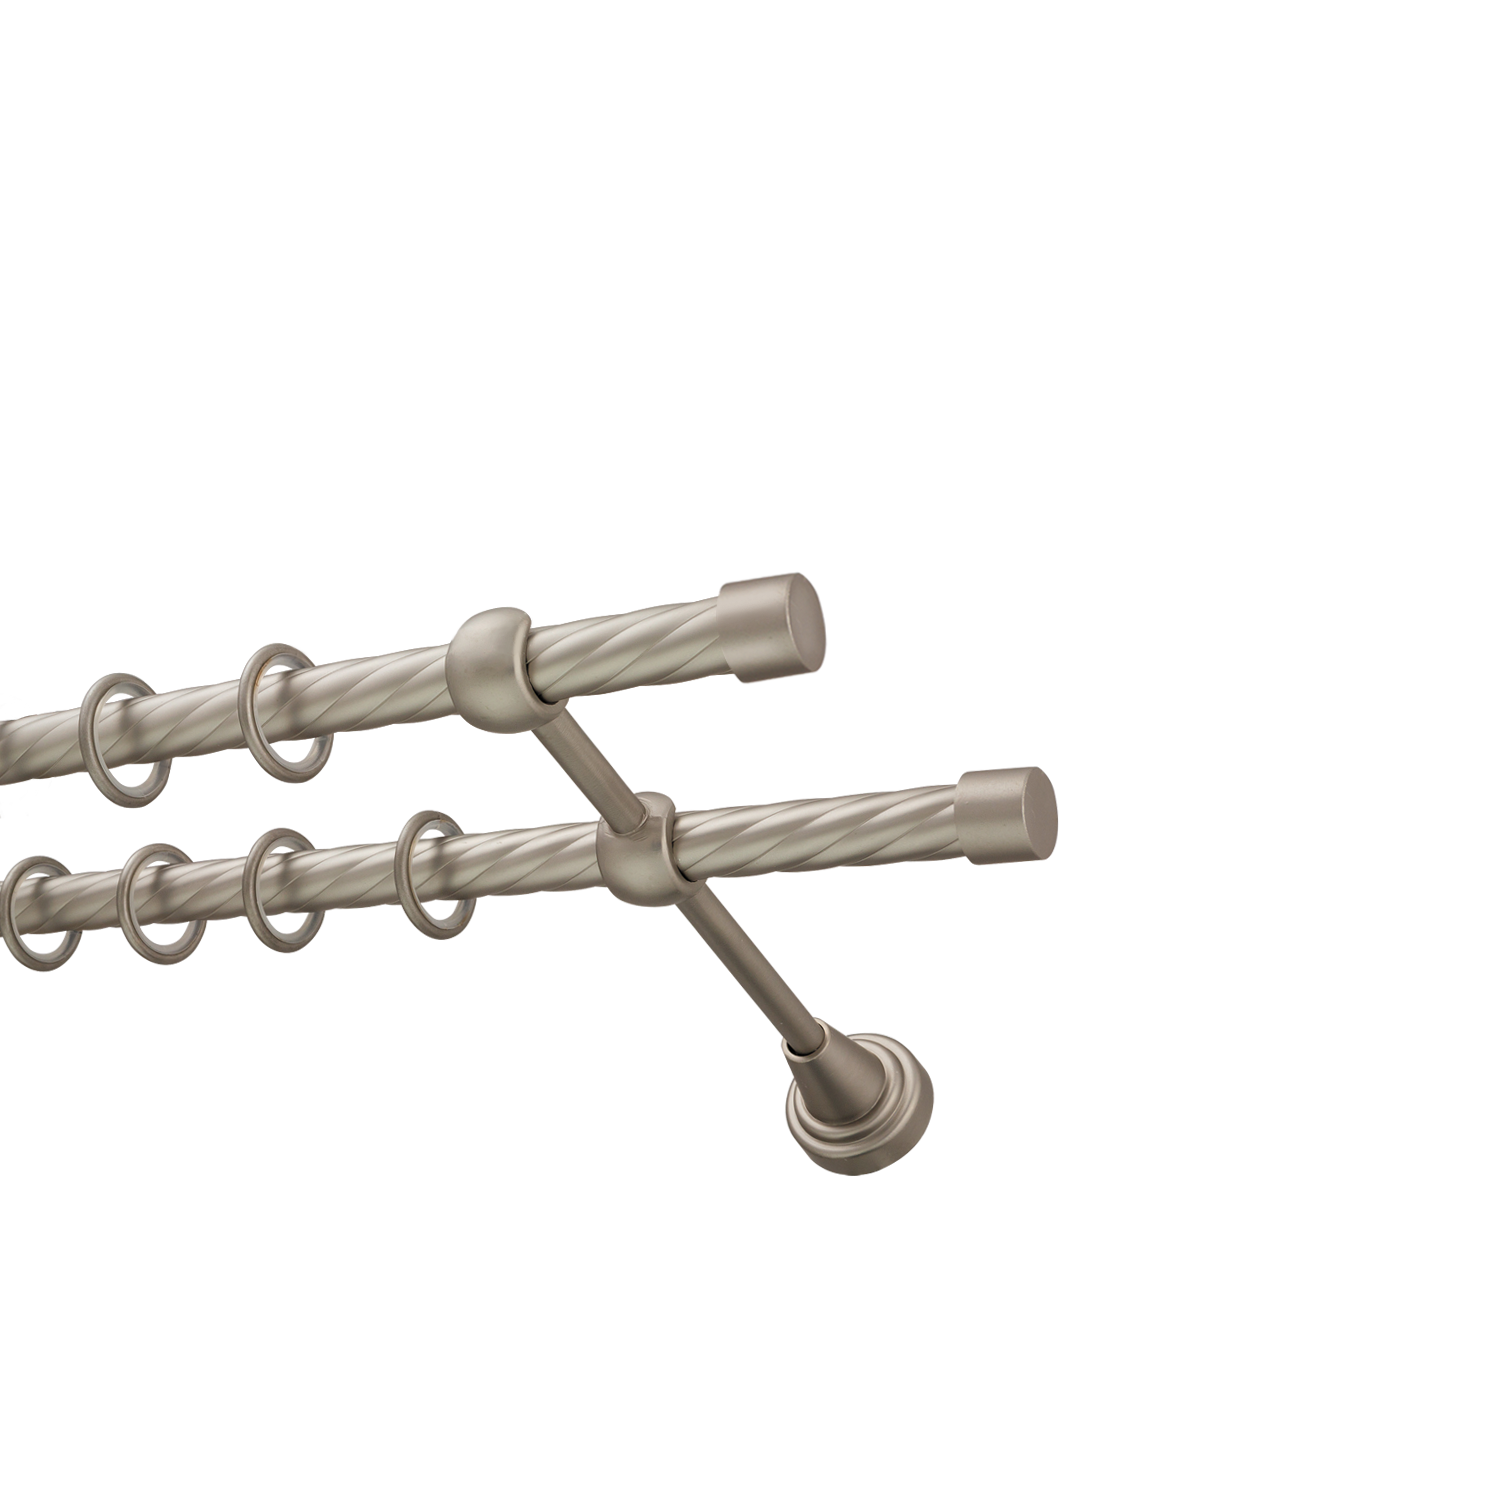 Металлический карниз для штор Заглушка, двухрядный 16/16 мм, сталь, витая штанга, длина 180 см